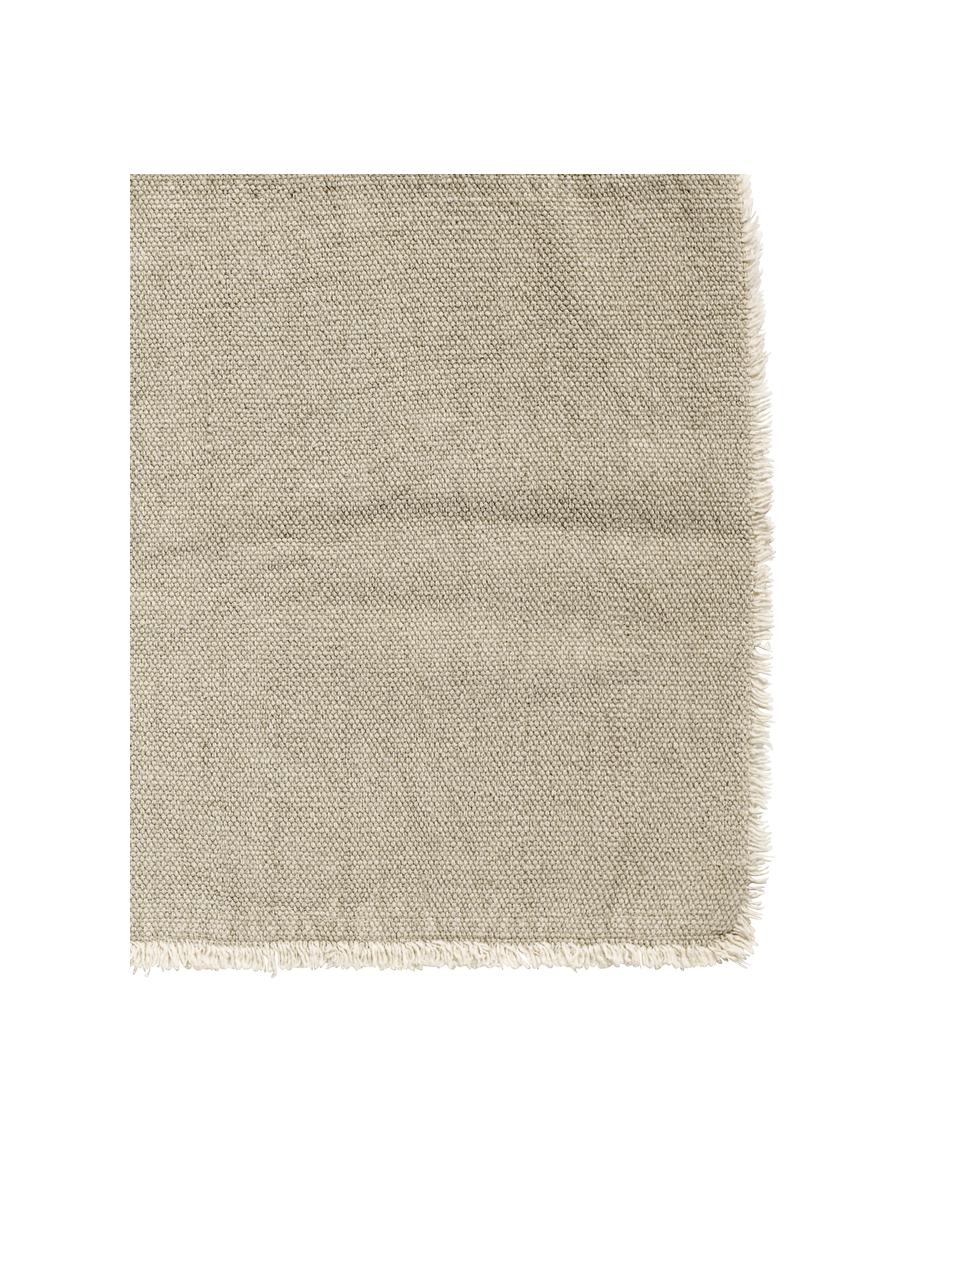 Podkładka z bawełny Edge, 6 szt., Mieszanka bawełny, efekt sprania, Beżowy, S 35 x D 48 cm